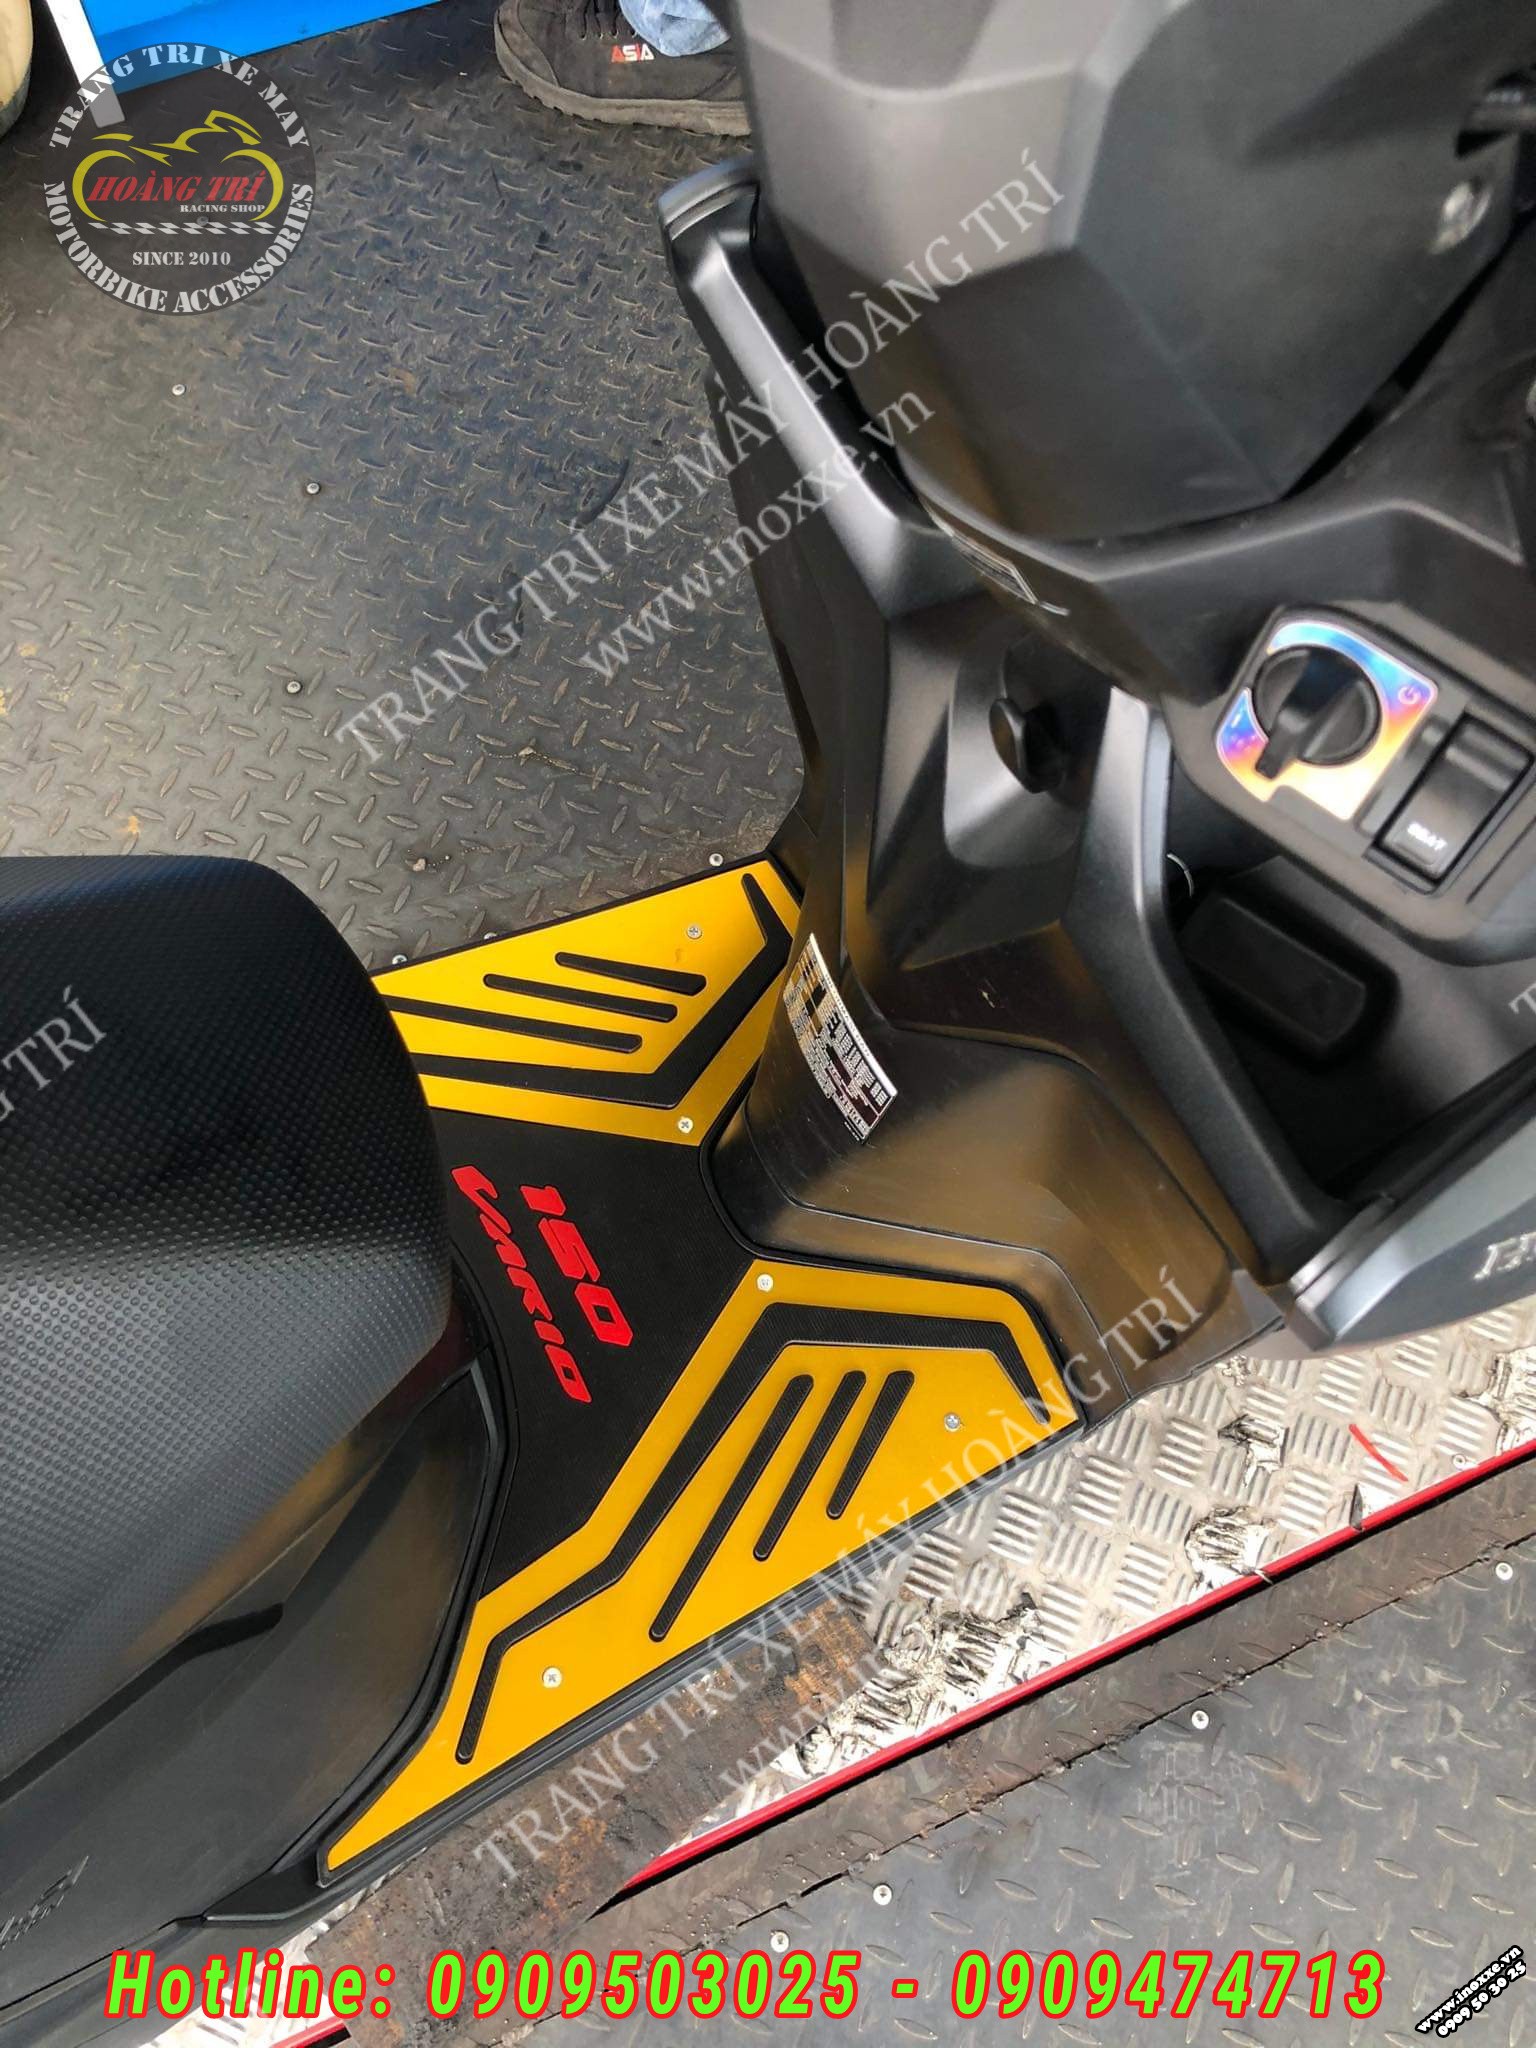 Thảm để chân Shark Power cho xe Vario, Click 2018